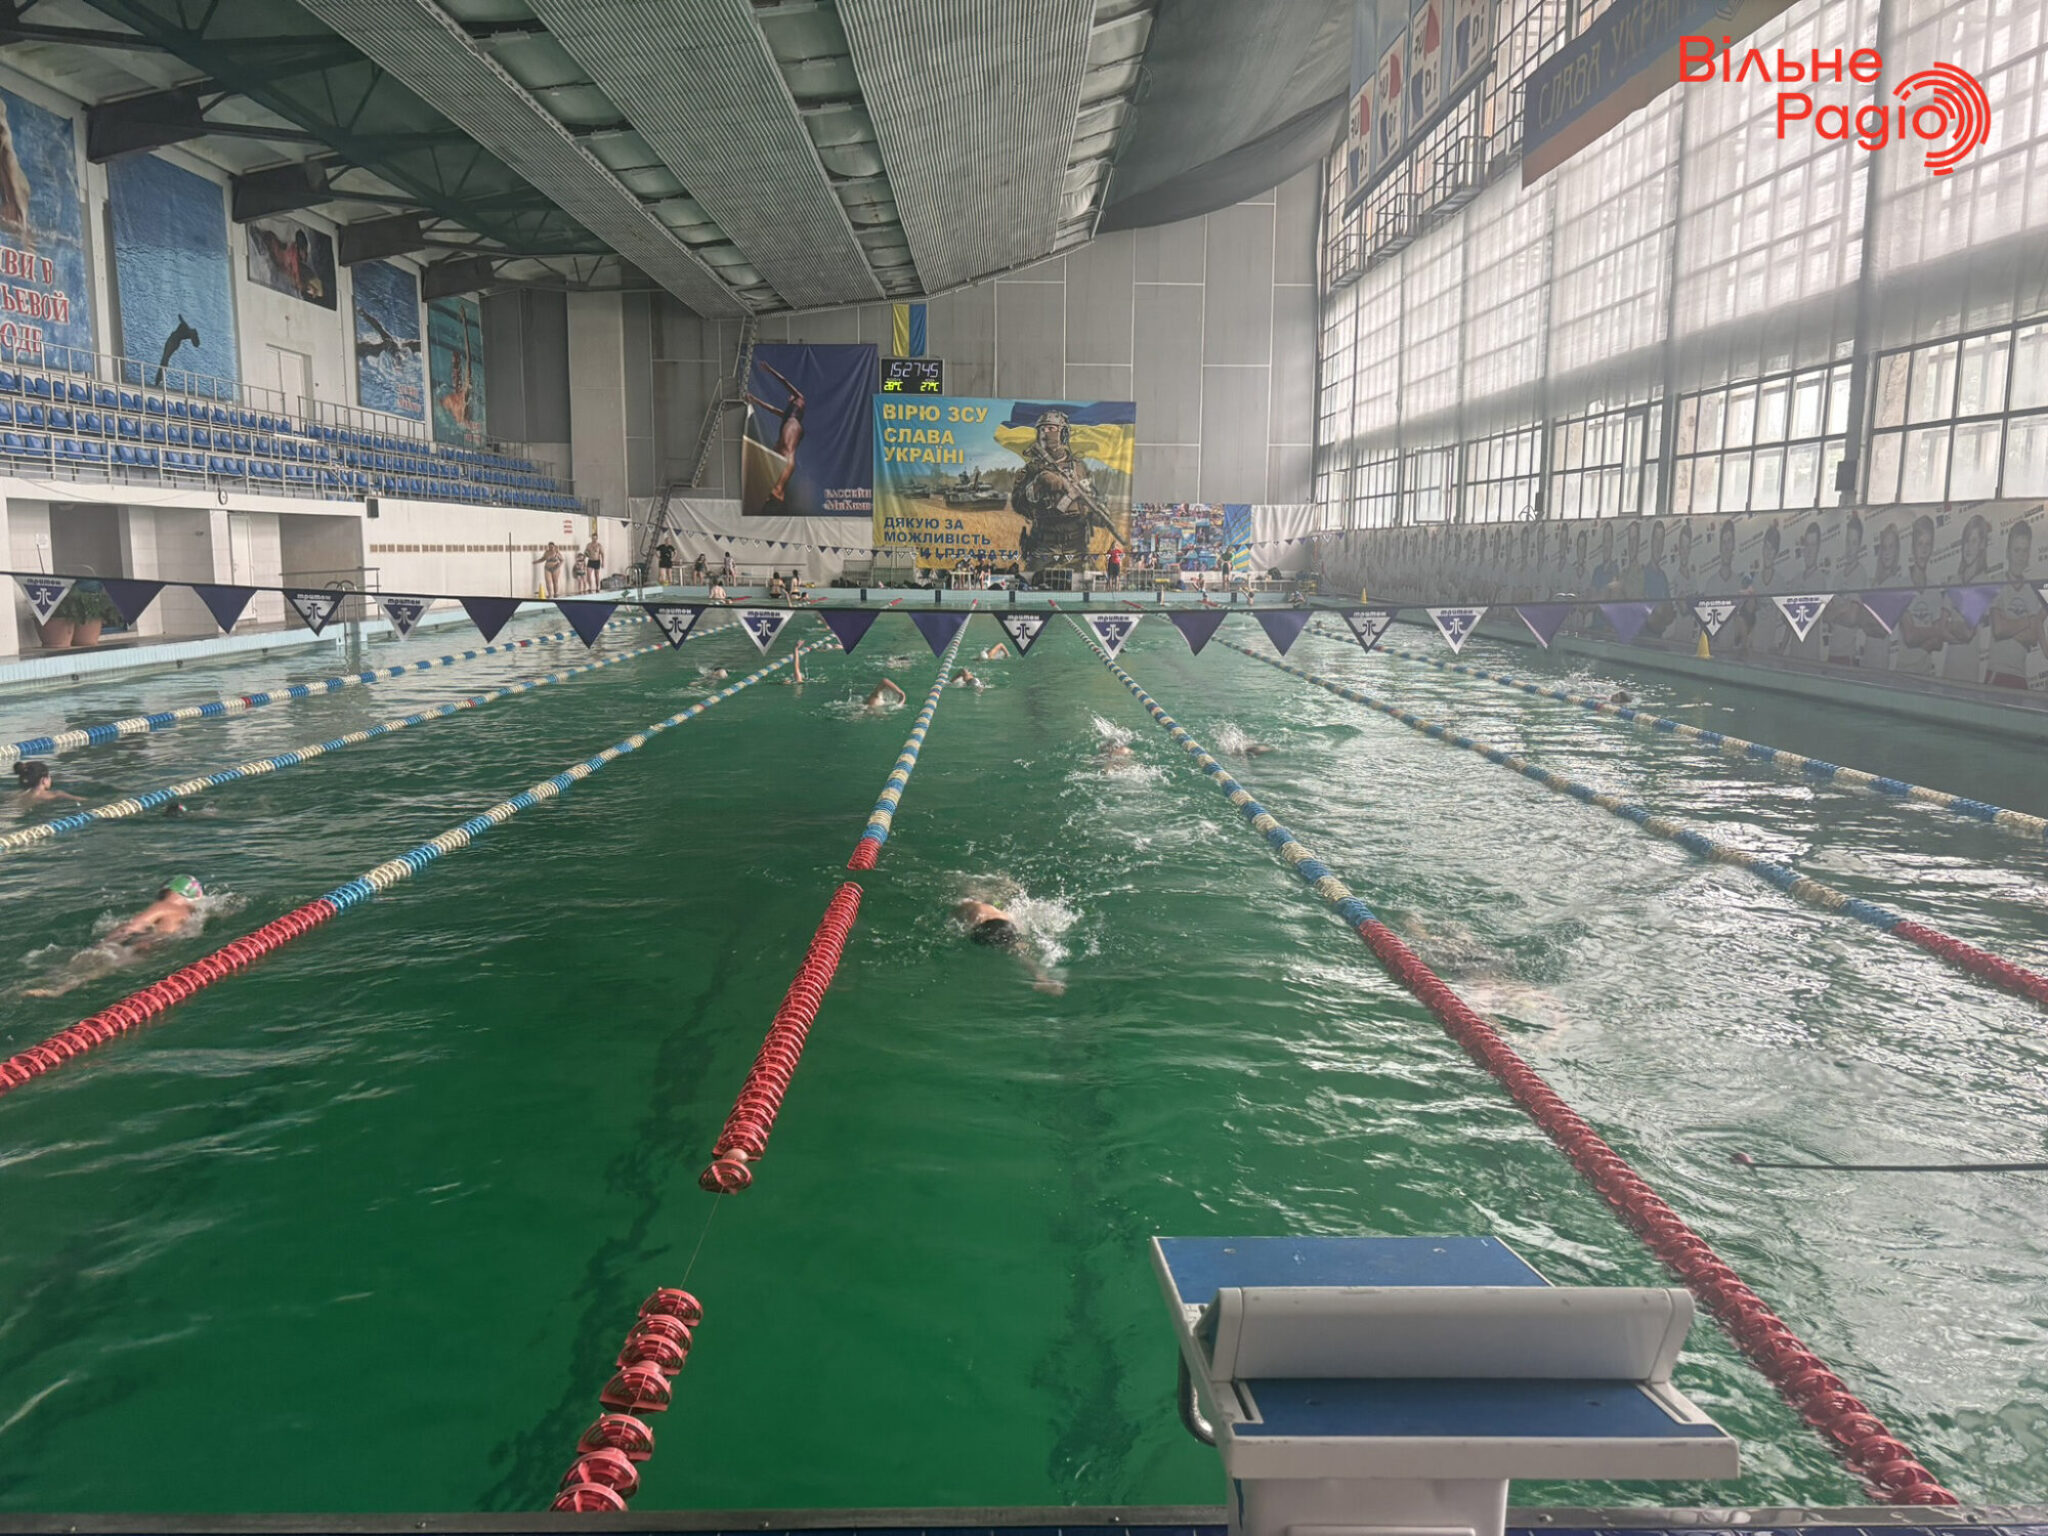 Данило Чуфаров на тренуванні у басейні Кам’янського. Фото: Вікторія Журавель/Вільне радіо